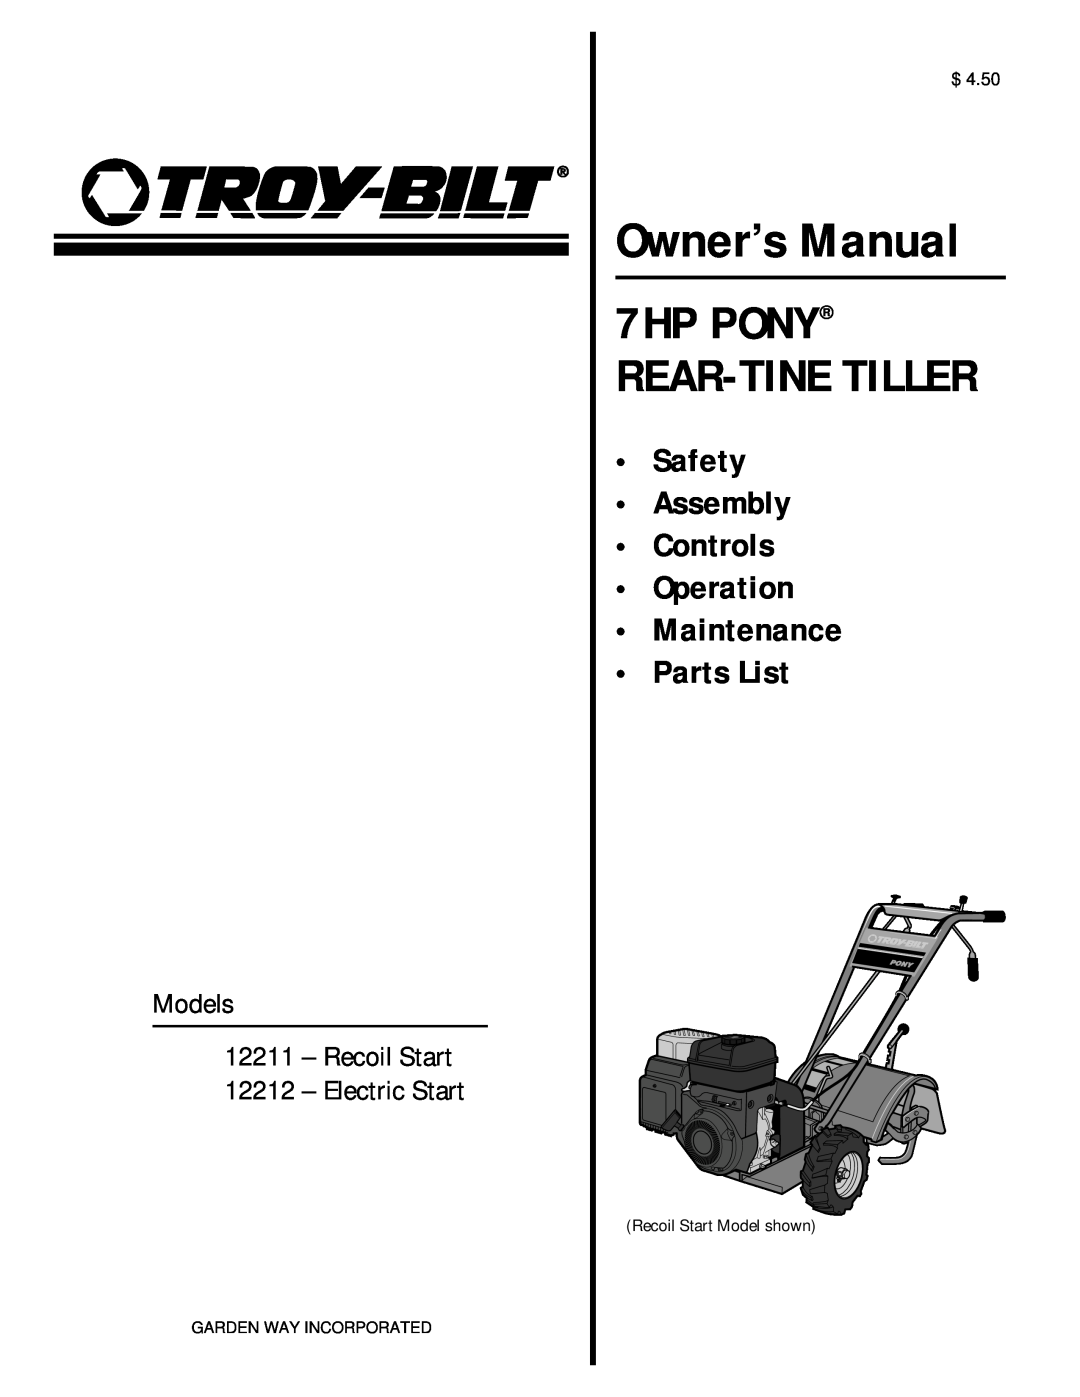 Troy-Bilt owner manual Owner’s Manual, 7HP PONY REAR-TINE TILLER, Models 12211 - Recoil Start 12212 - Electric Start 